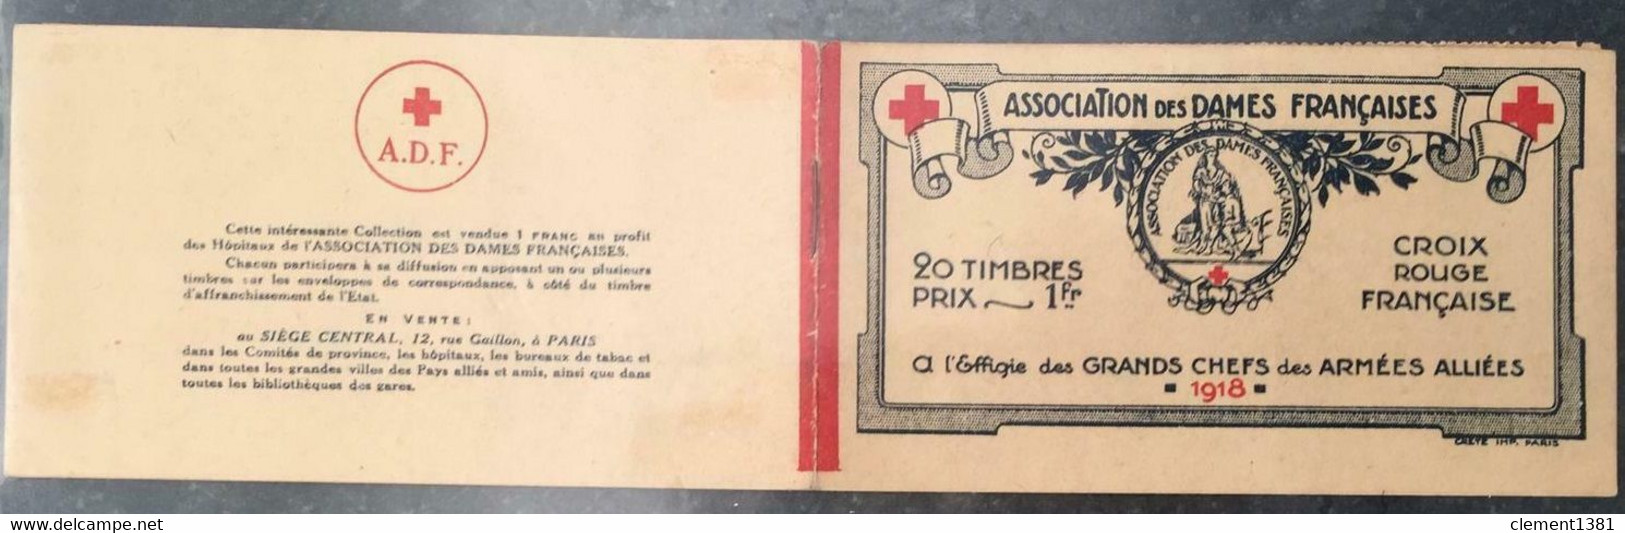 FRANCE MILITARIA VIGNETTES CROIX ROUGE 1914/18 CARNET ASSOCIATION DES DAMES FRANÇAISES 20 TIMBRES ERINNOPHILIE - Croix Rouge